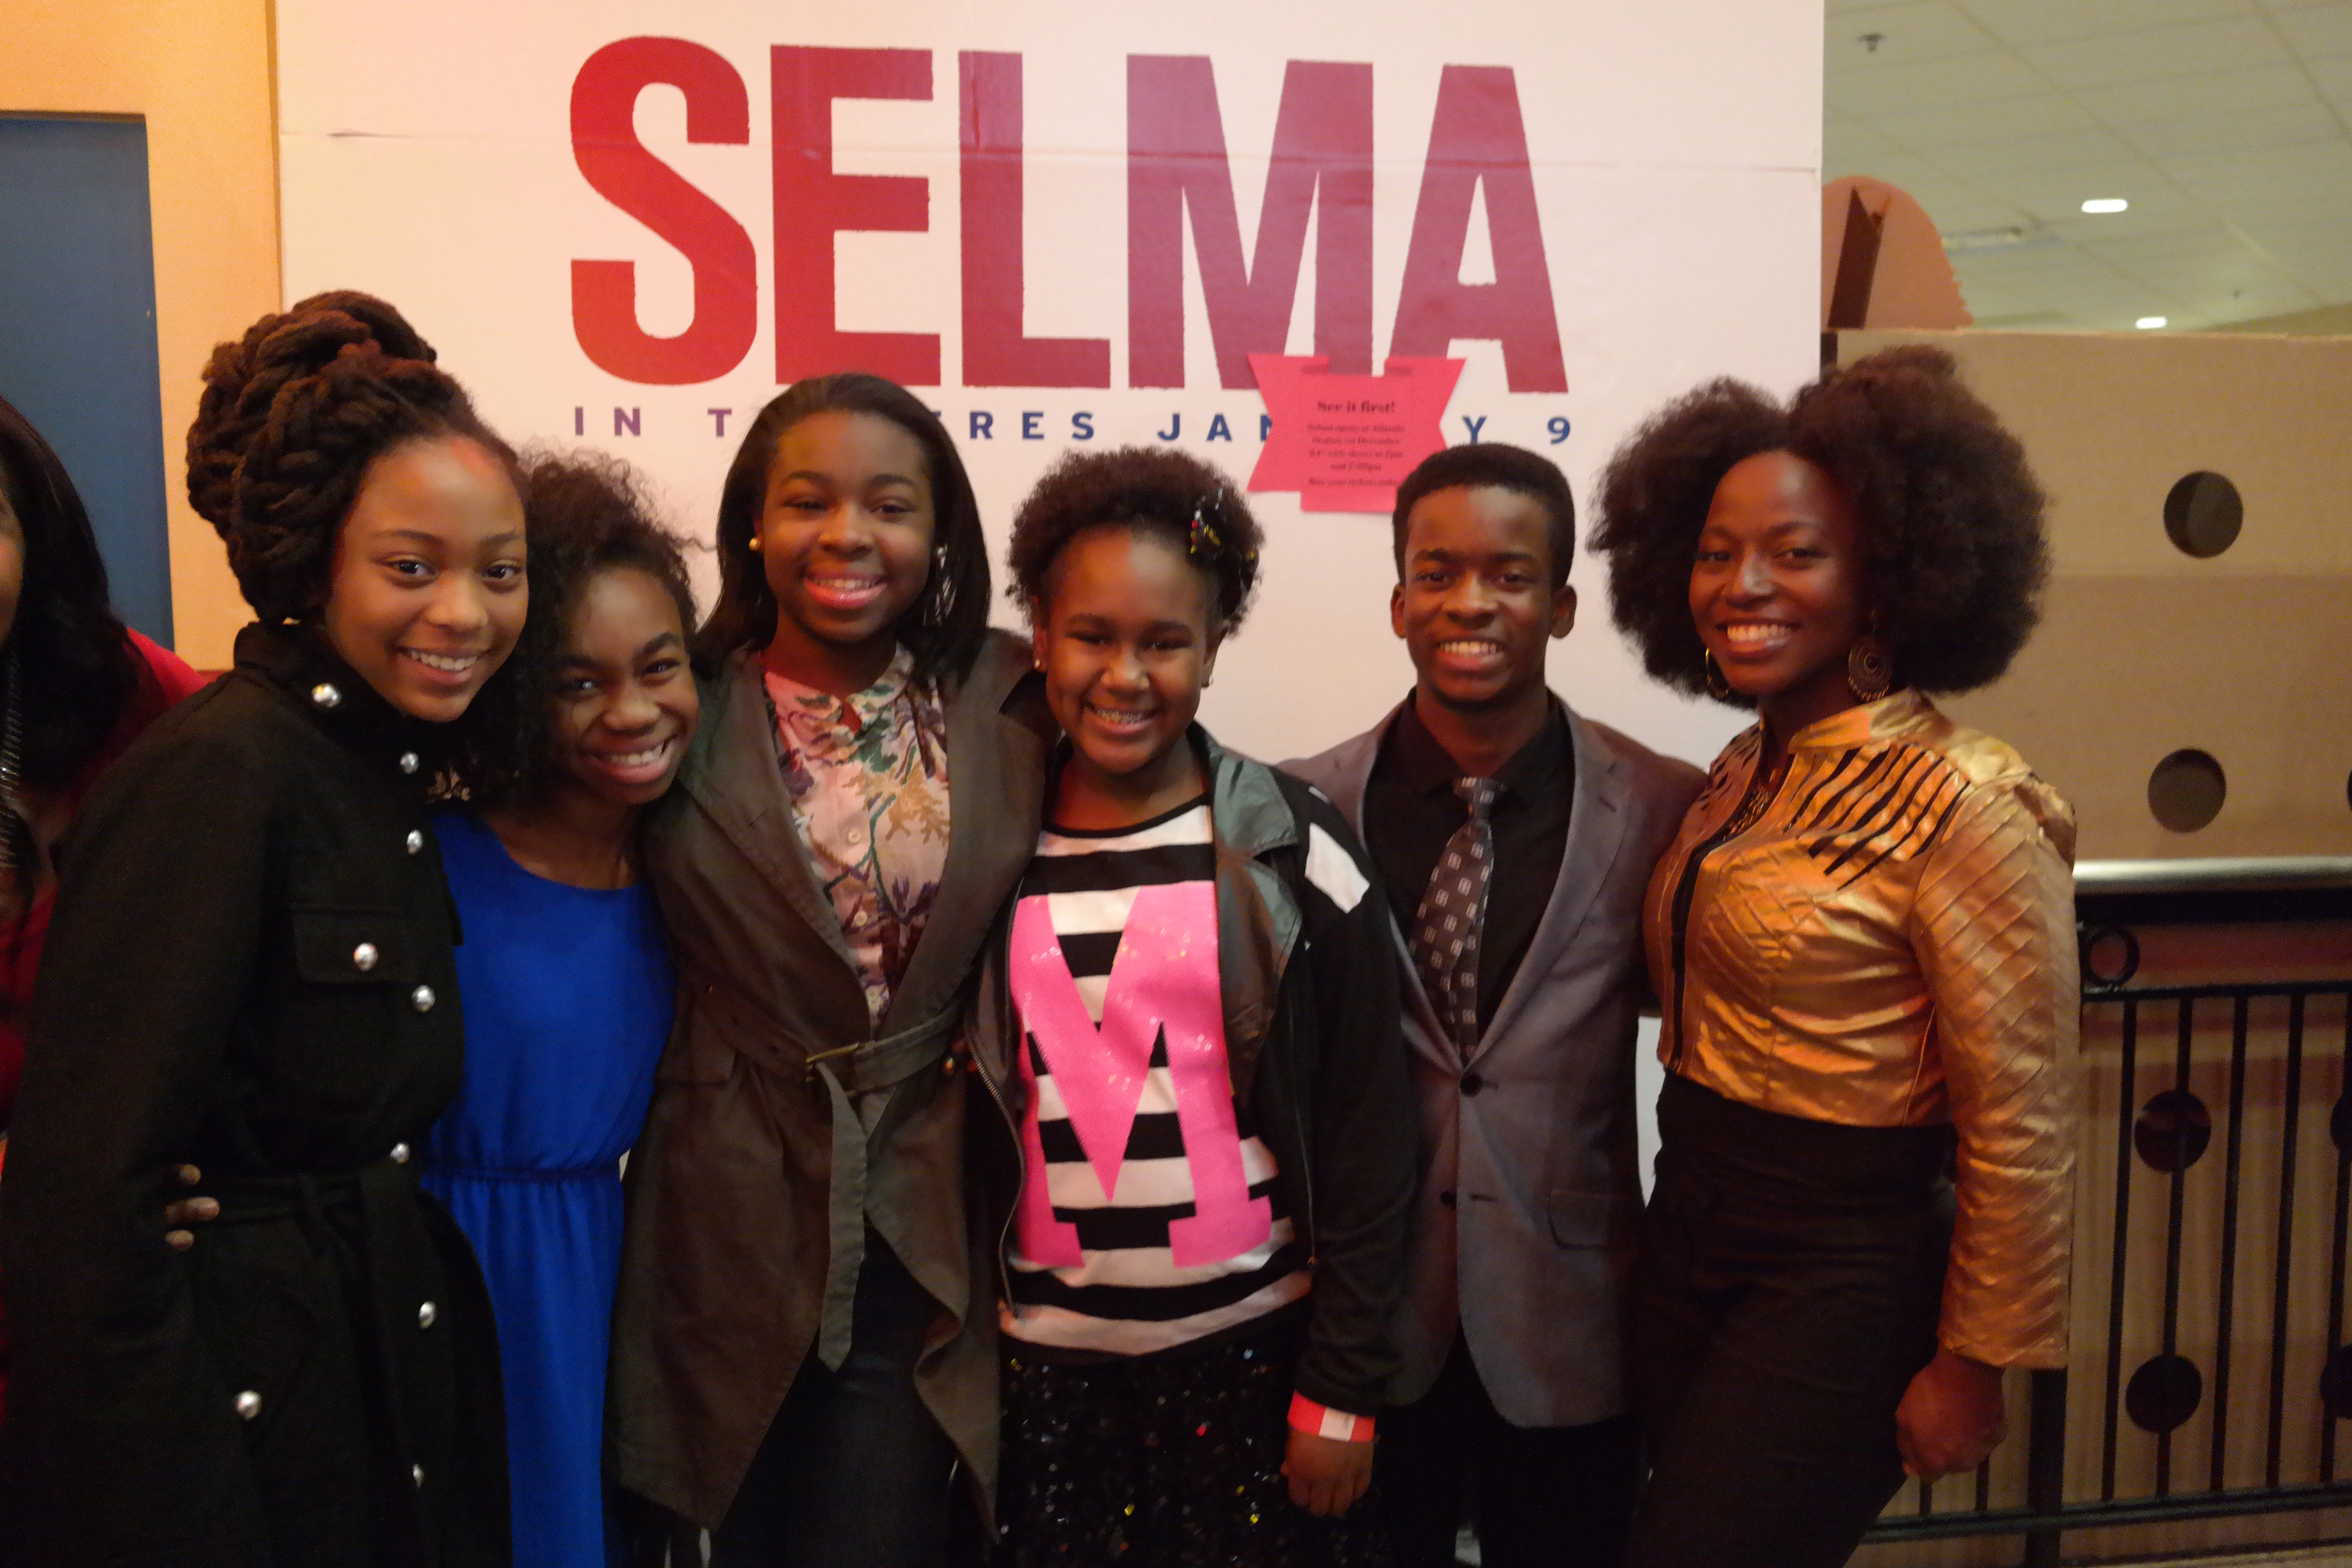 Jordan Rice (2nd from left) with SELMA castmates Trinity Simone, Ebony Billups, Mikeria Howard, Elijah Oliver and Charity Jordan at the Atlanta Screening of the movie